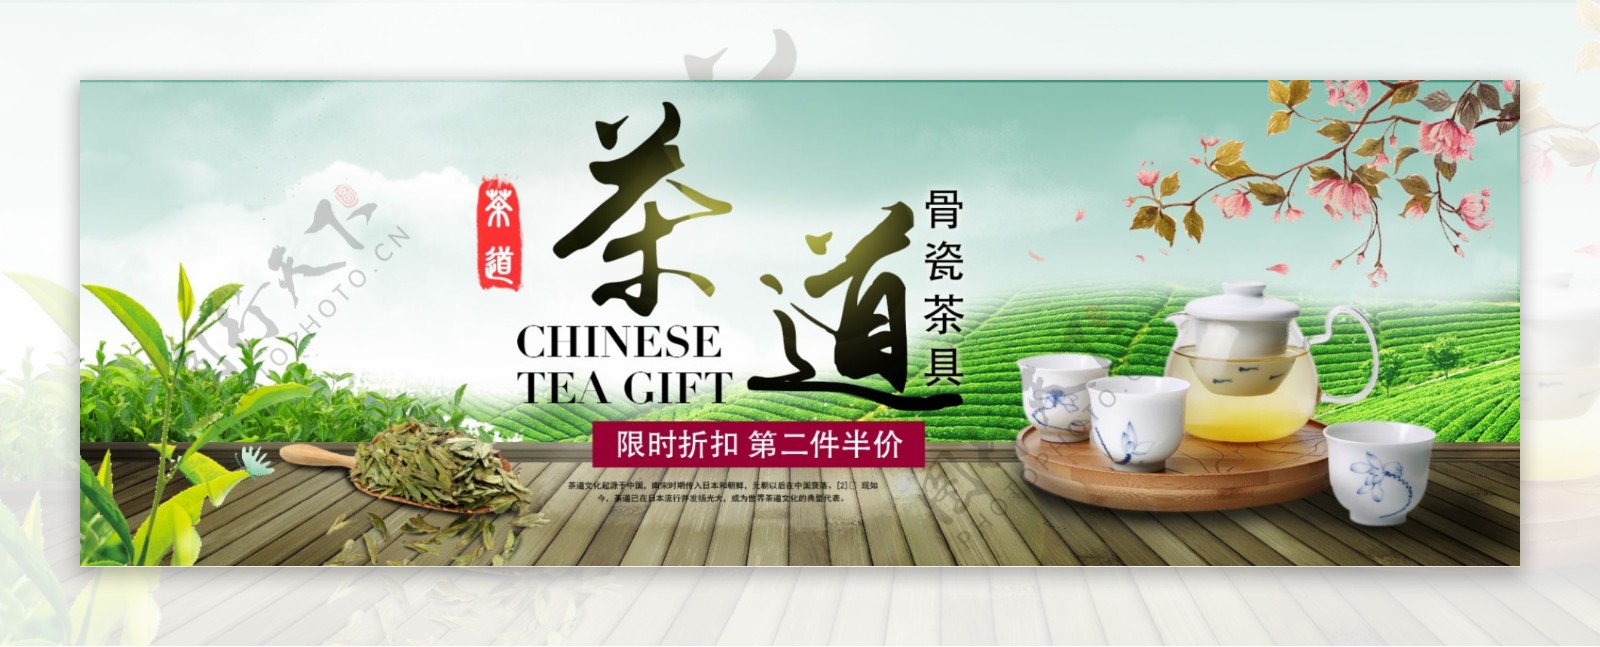 绿色清新茶道茶具茶淘宝电商天猫海报模板banner